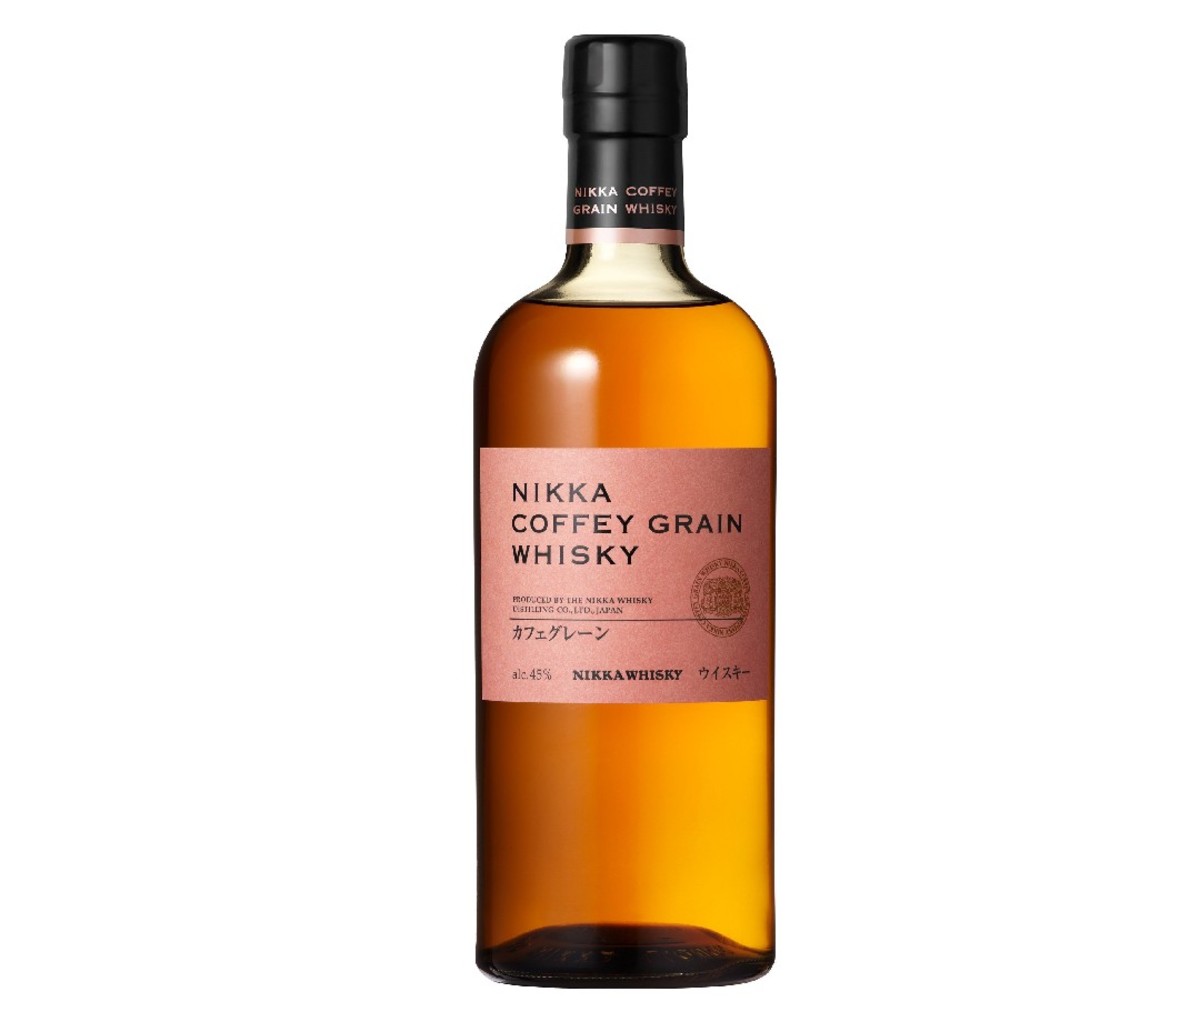 Bottle of Nikka Coffey Grain Japanese Whisky